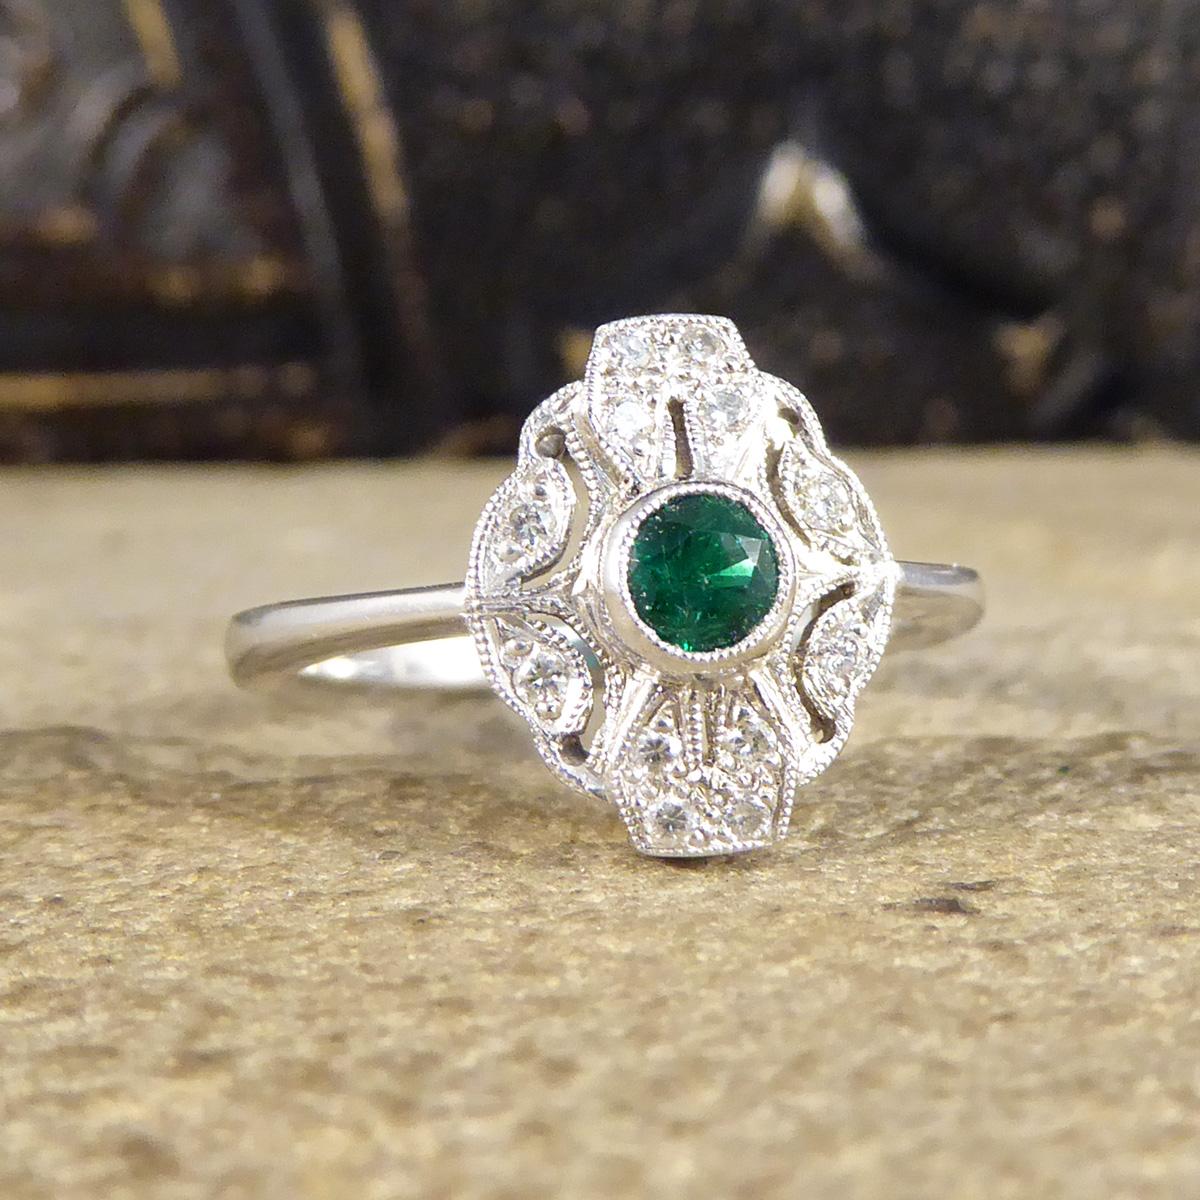 Dieser atemberaubende Ring wurde von Hand gefertigt und ist neu und ungetragen. Es wurde entworfen und sorgfältig gefertigt, um einen Art-Deco-Stil Ring mit einem Kragen-Set hellen verzauberten grünen Smaragd mit einem Gewicht von 0,19 ct in der